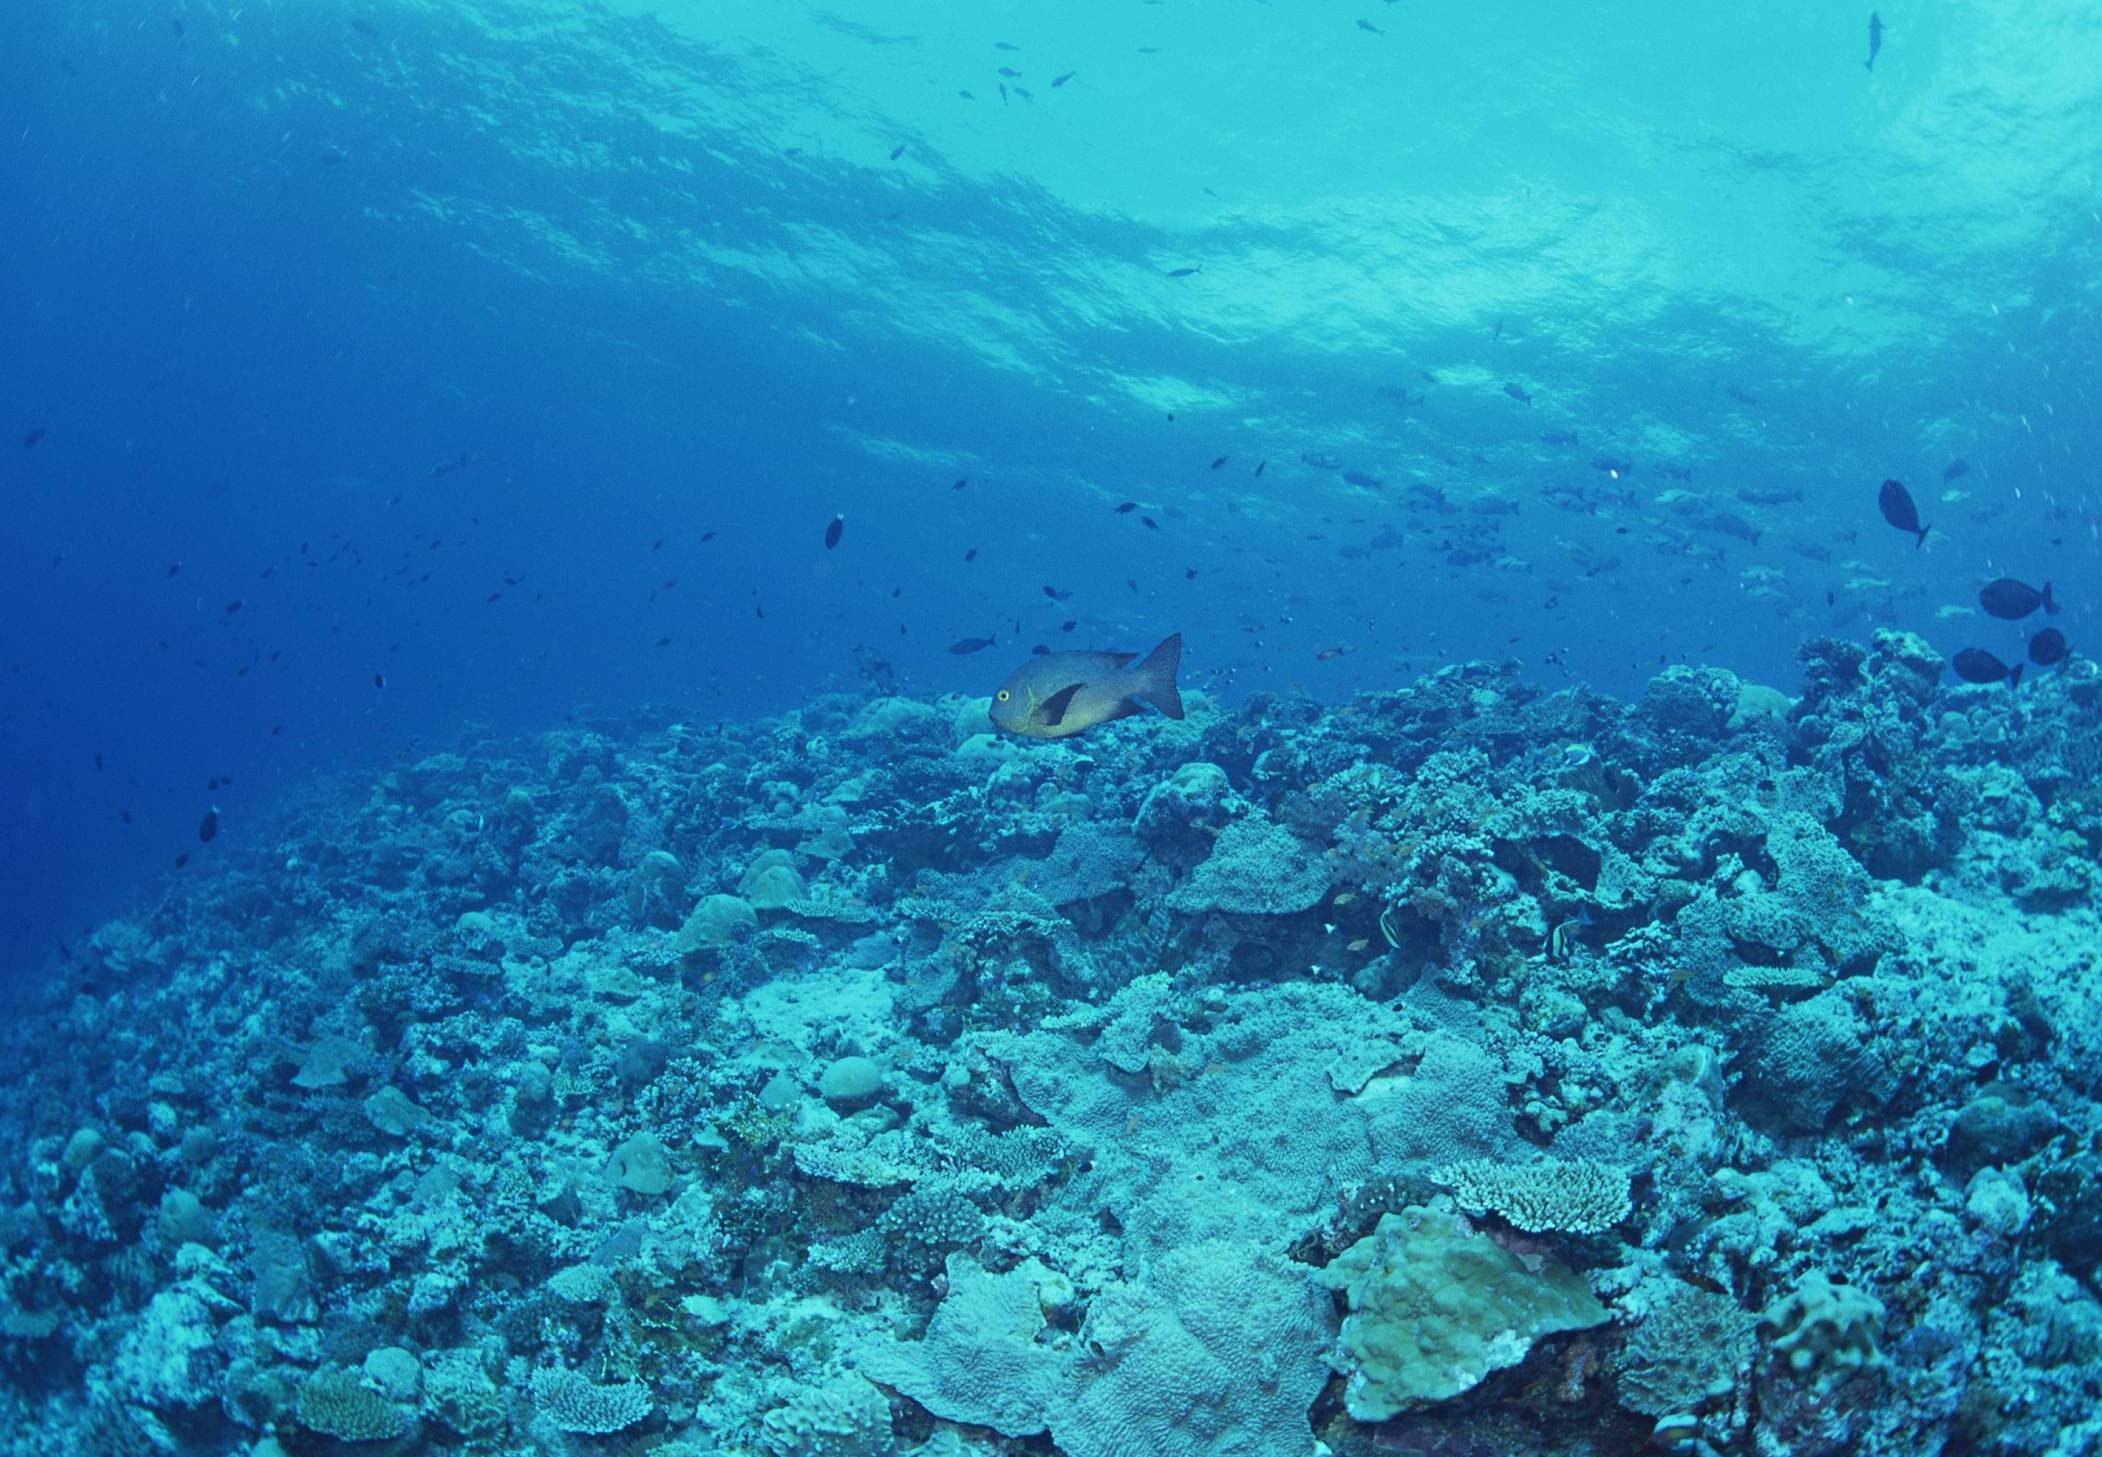 马里亚纳海沟深度超1万米,一万米深的海水是怎样的?还咸吗?